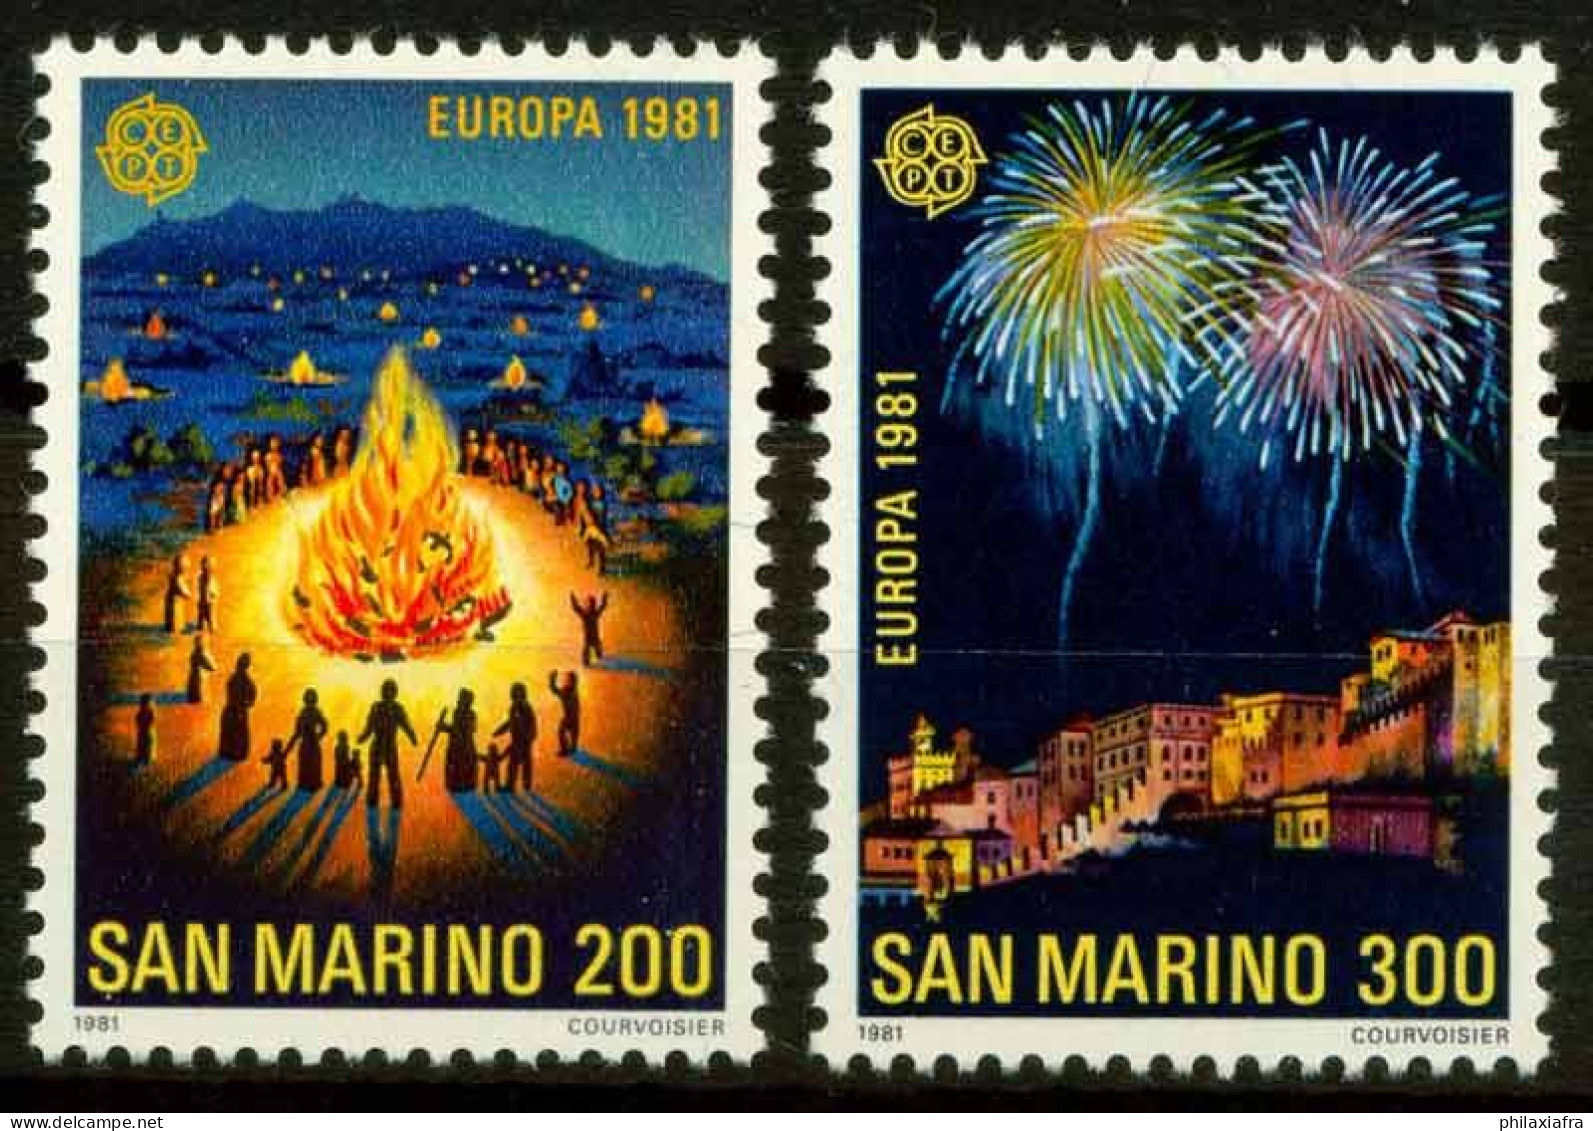 Saint Marin 1981 Sass. 1069 Neuf ** 100% Europe CEPT - Neufs